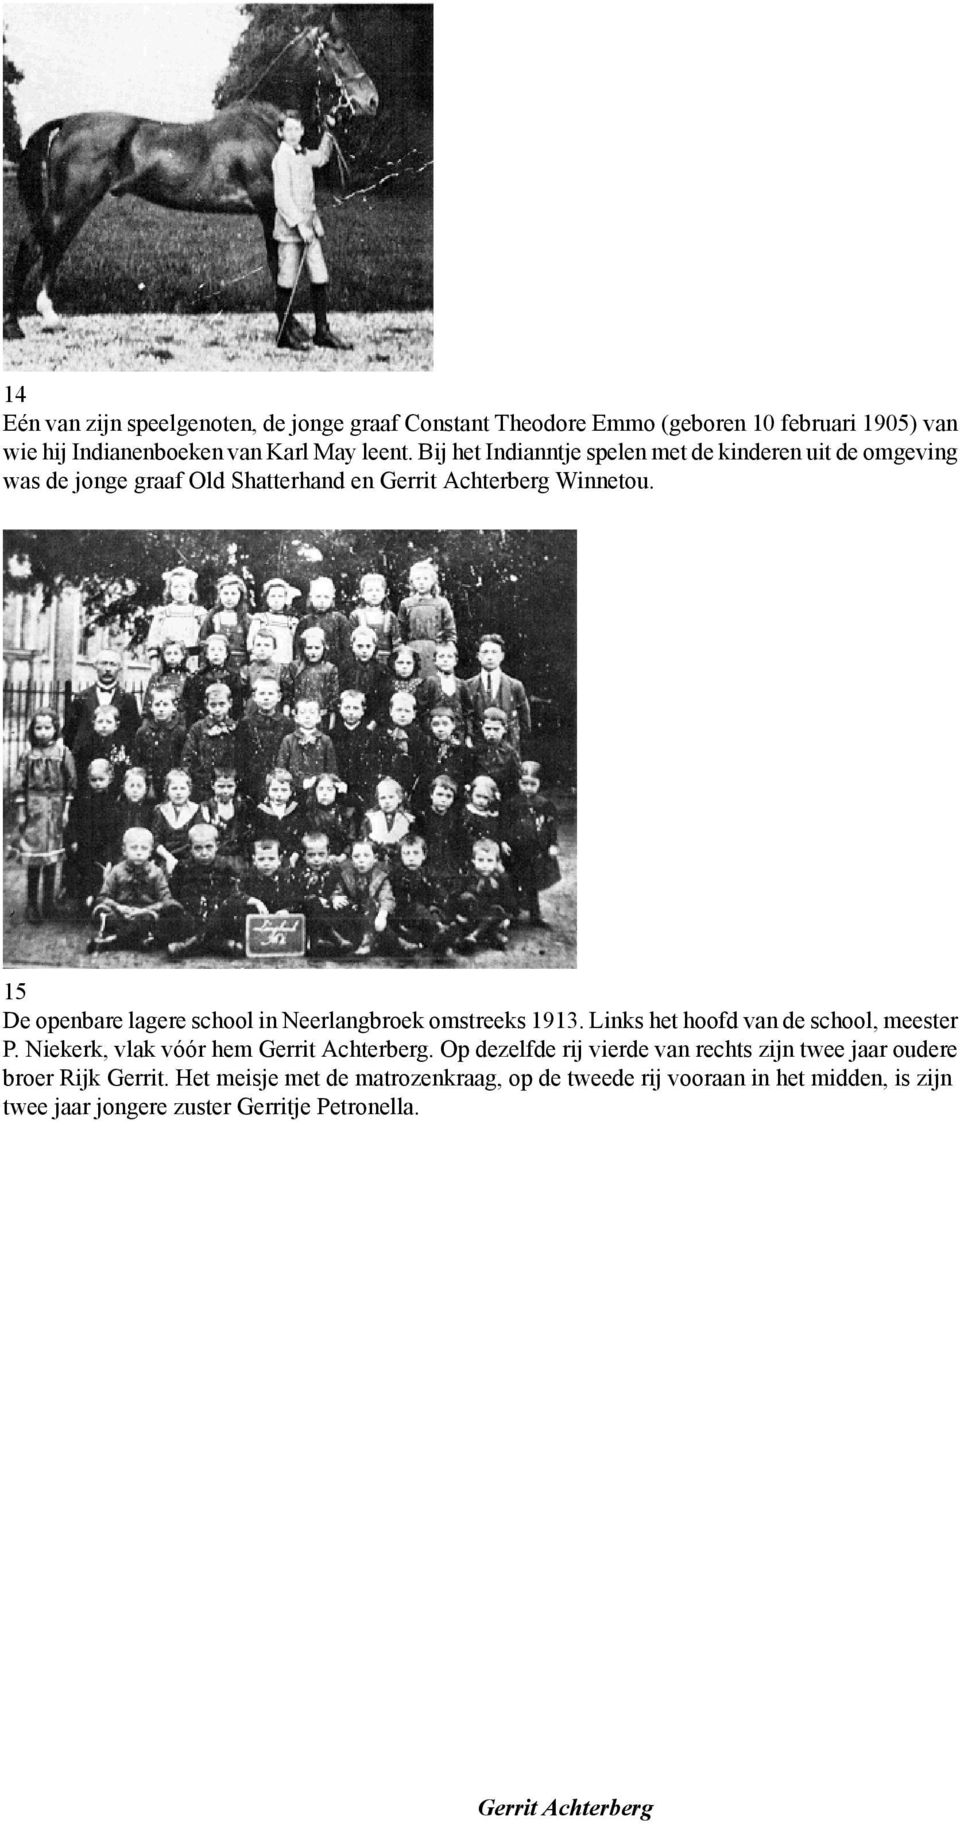 15 De openbare lagere school in Neerlangbroek omstreeks 1913. Links het hoofd van de school, meester P. Niekerk, vlak vóór hem.